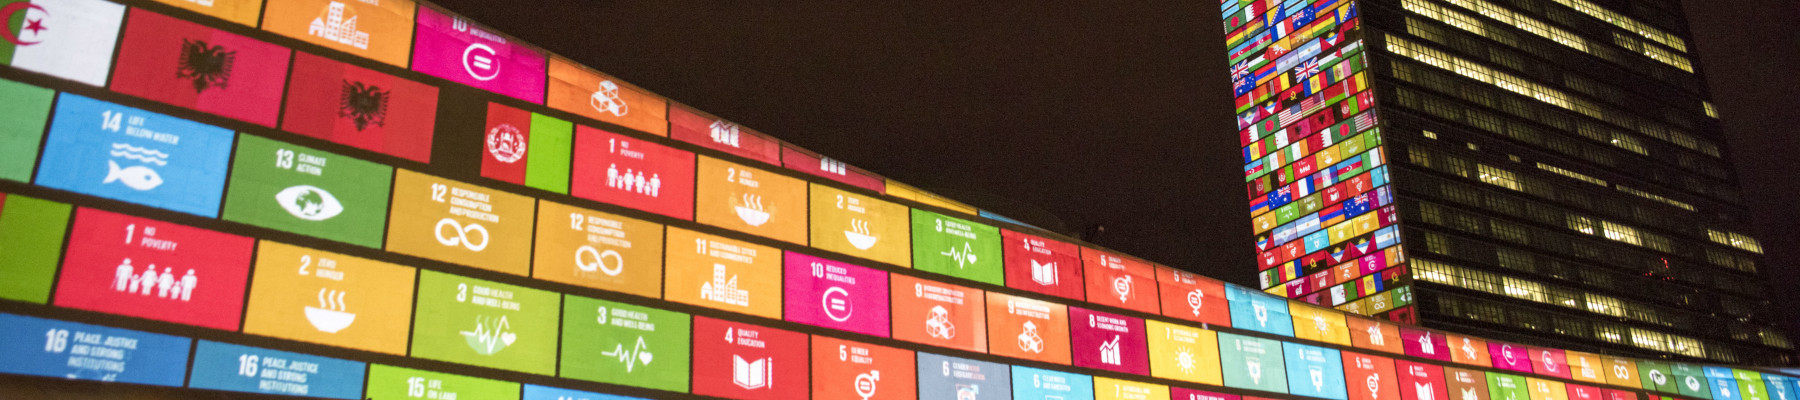 Die SDG-Icons bei Nacht aufs UNO-Hauptgebäude projiziert.